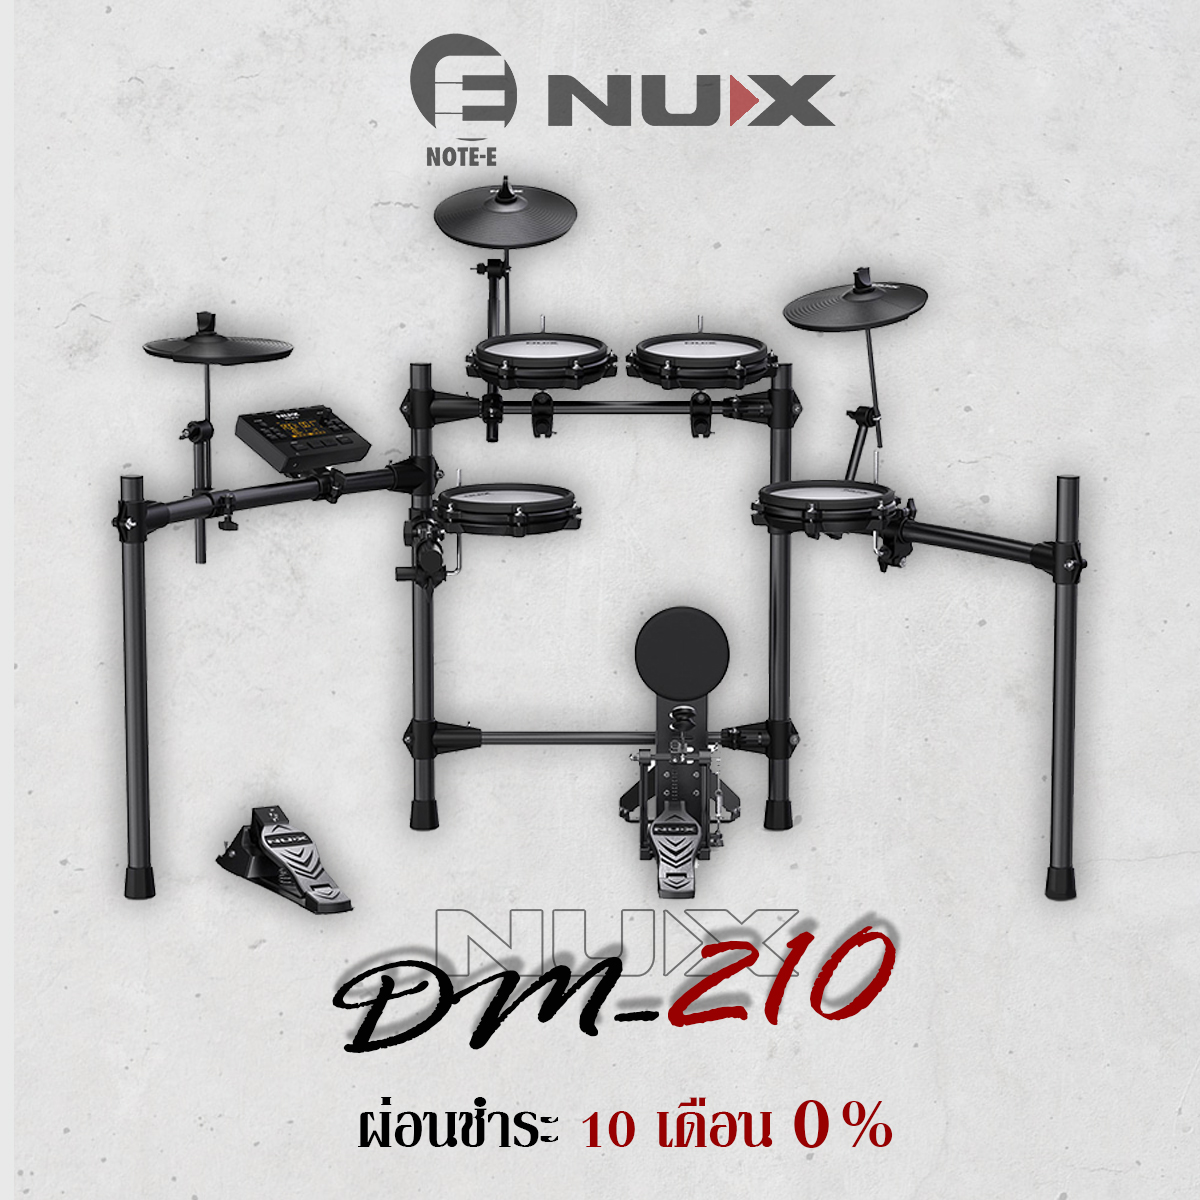 กลองไฟฟ้า NUX DM-210 All Mesh Head Digital Drum Kit I ผ่อน0% นาน10เดือน